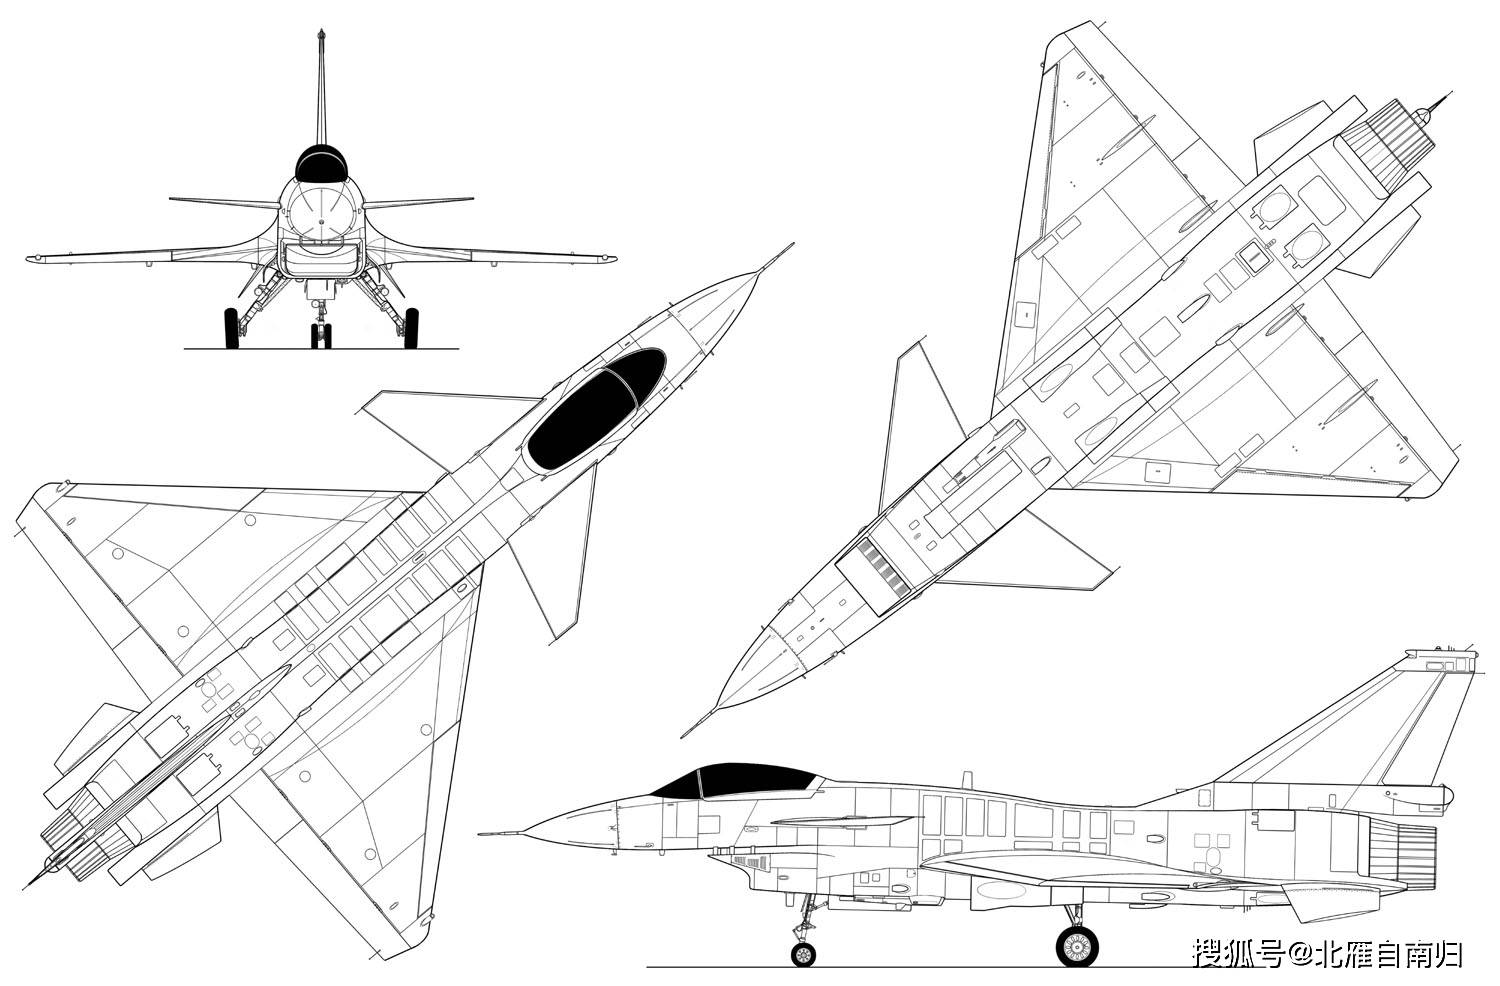 原创梦想无处不在,60年代航空业罕见机型,可变后掠翼重型歼-10